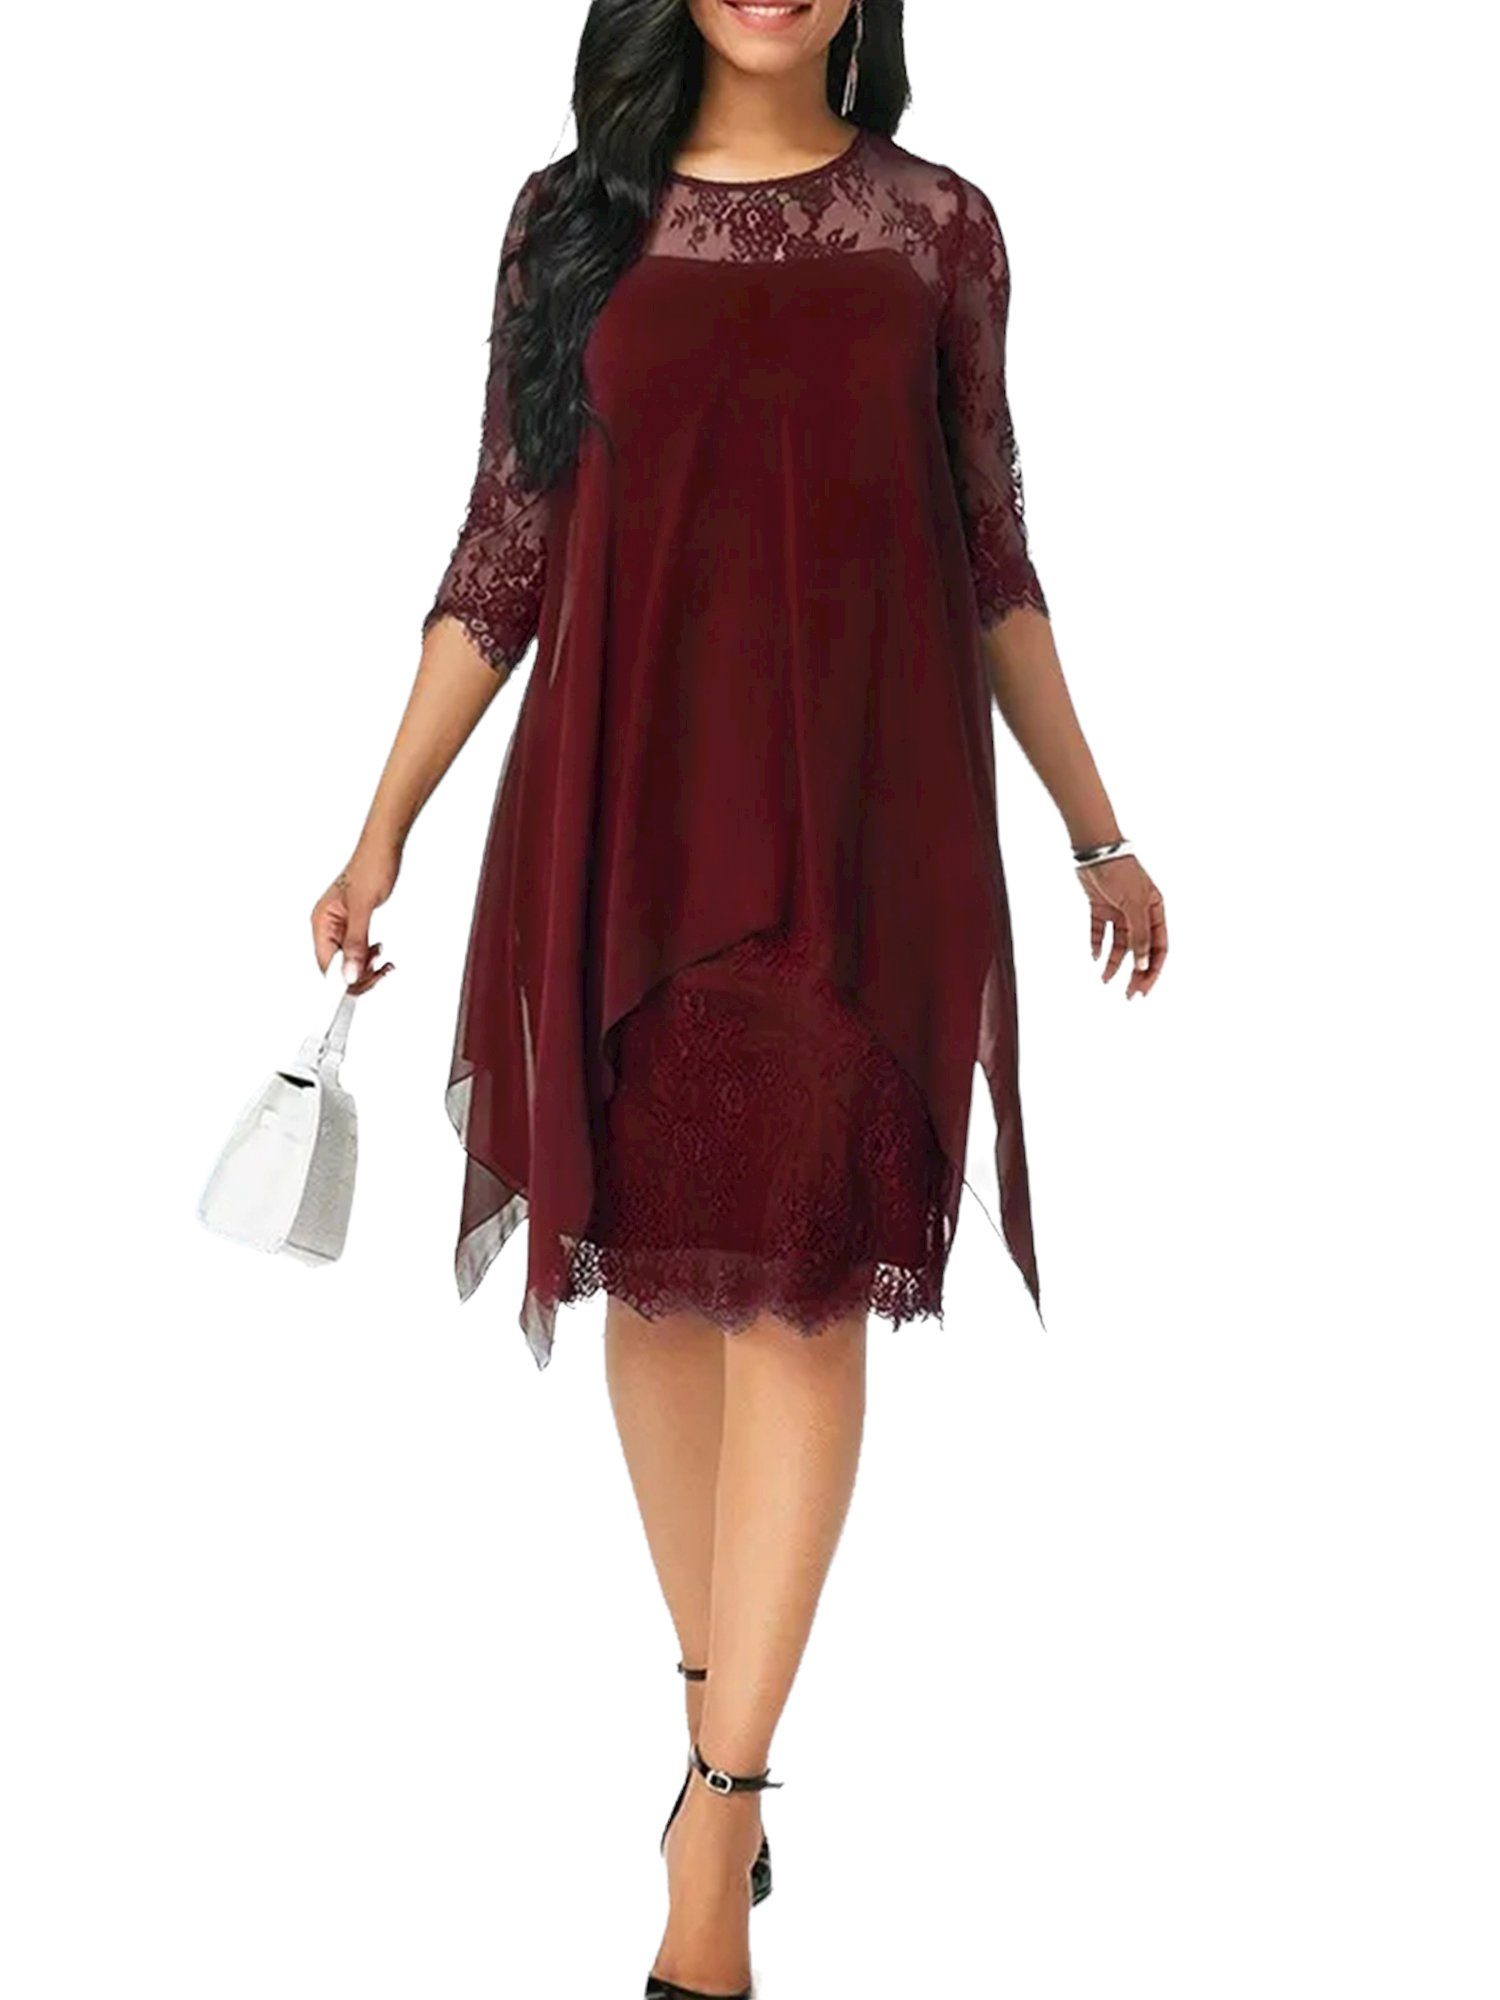 PYL Chiffonkleid »Damen Chiffon Spitze Abendkleid Homecoming Cocktail Party  Kleid« 44-52 Größe online kaufen | OTTO